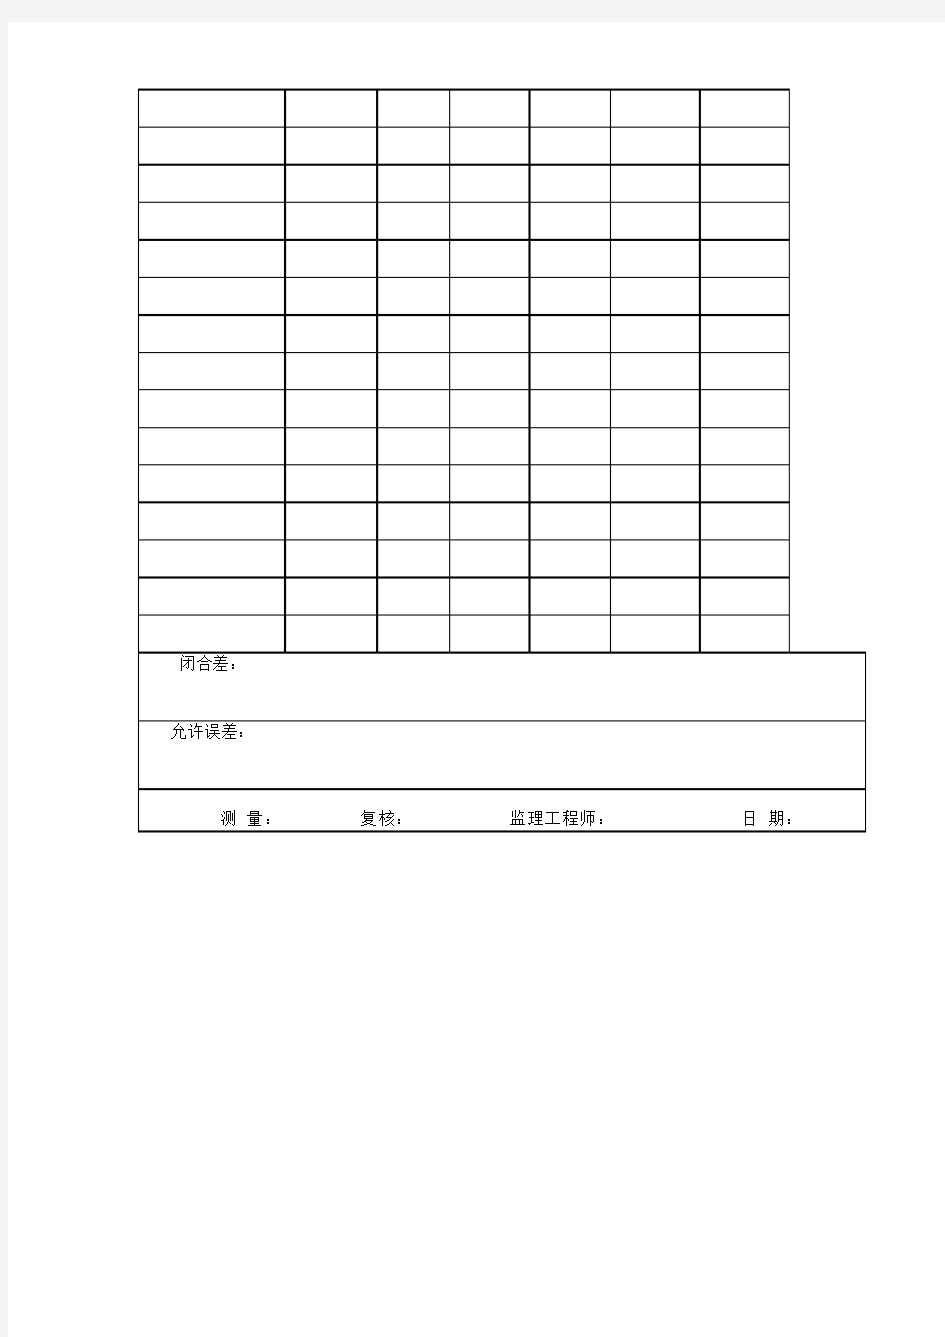 水准测量记录表(转点自动计算)